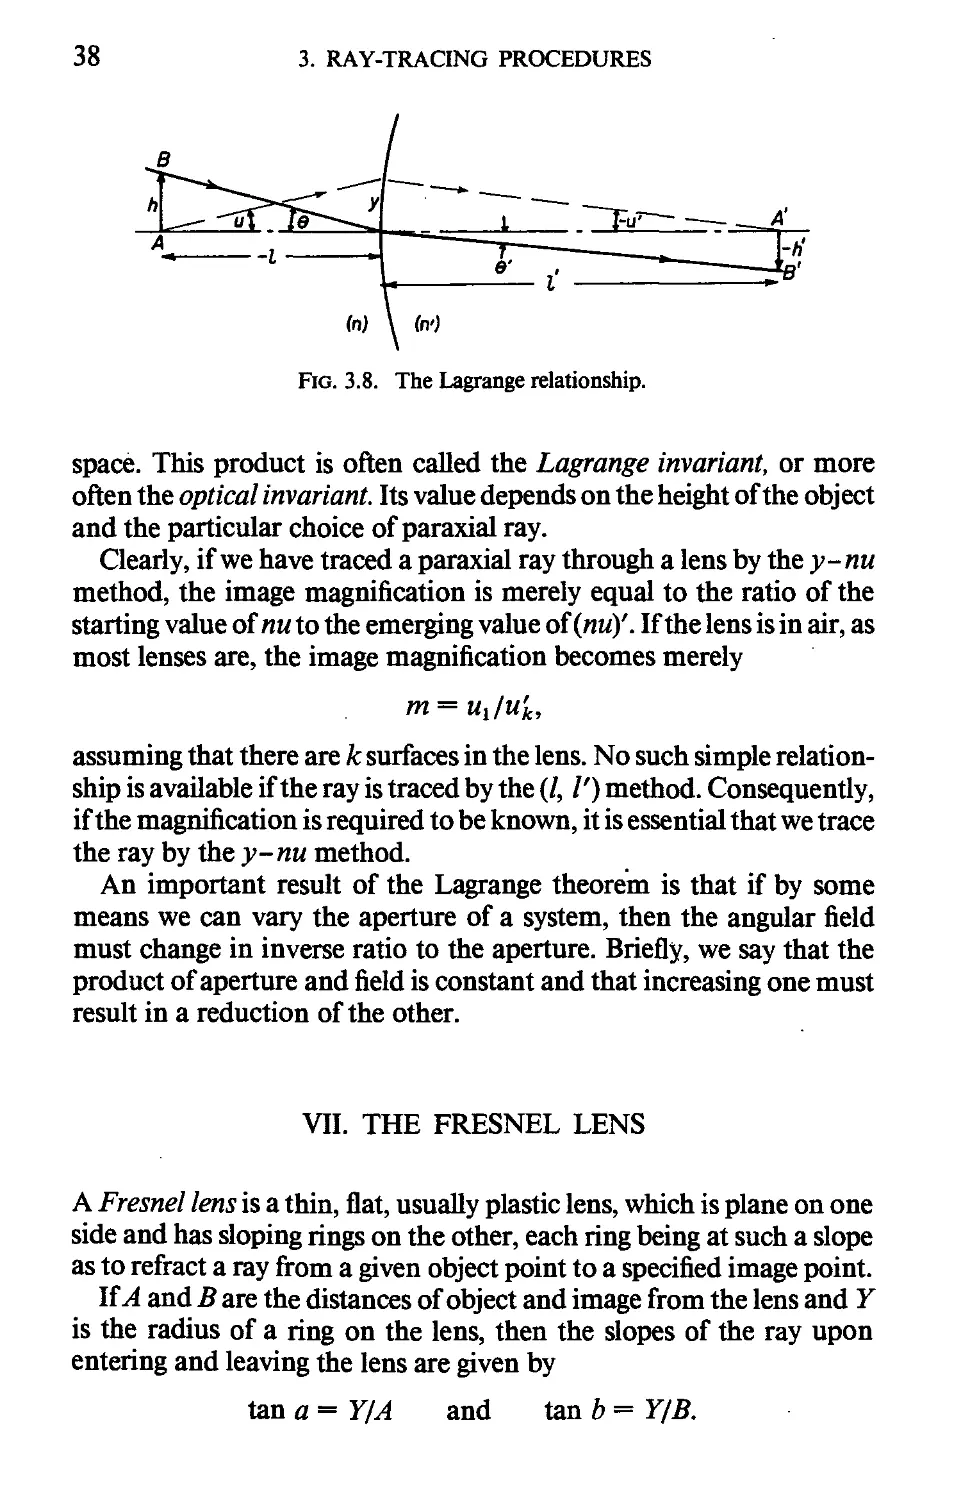 VII. The Fresnel Lens